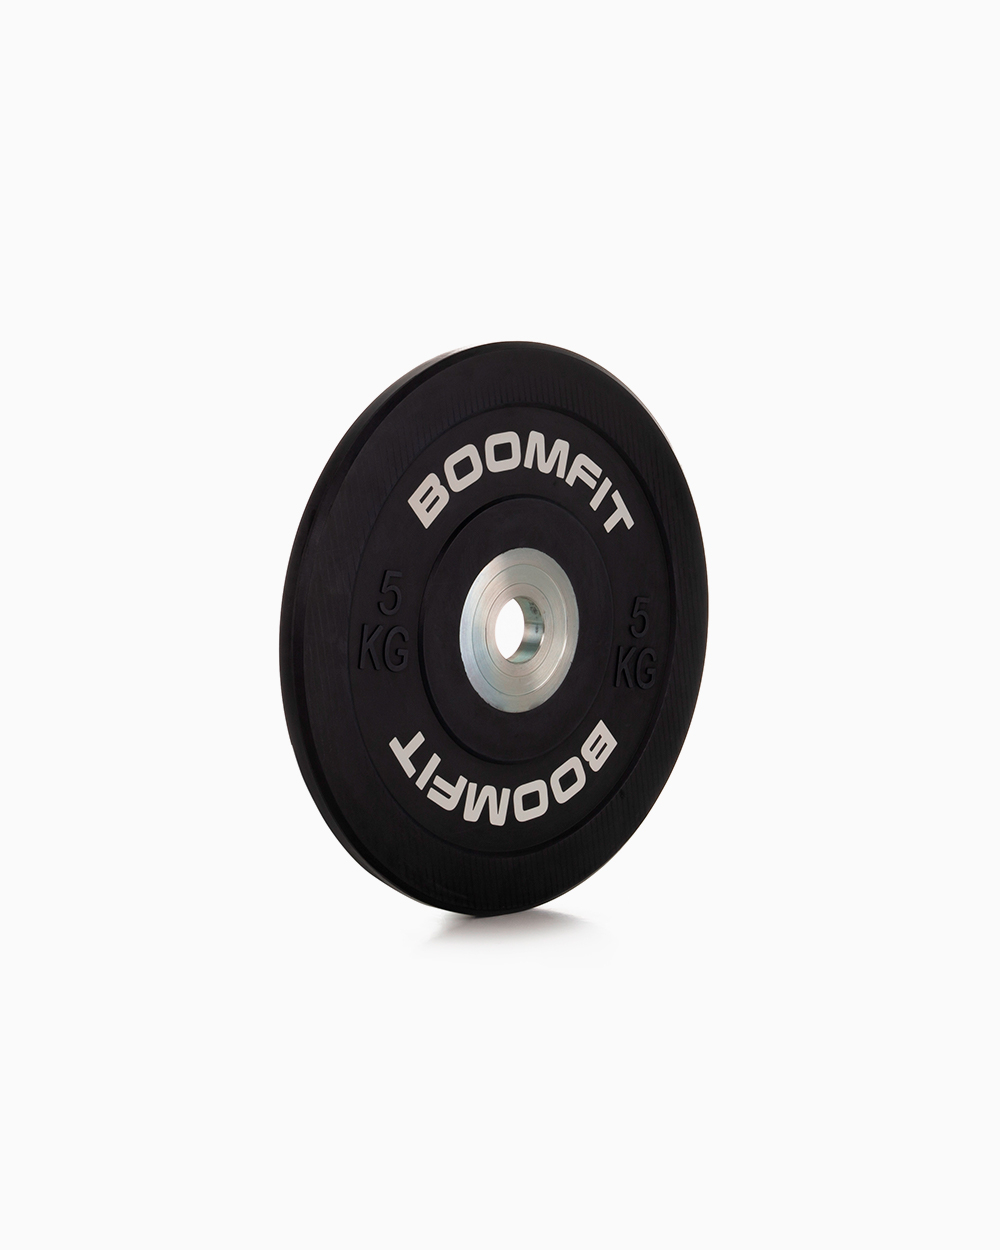 Disco De Competição 5kg - Boomfit